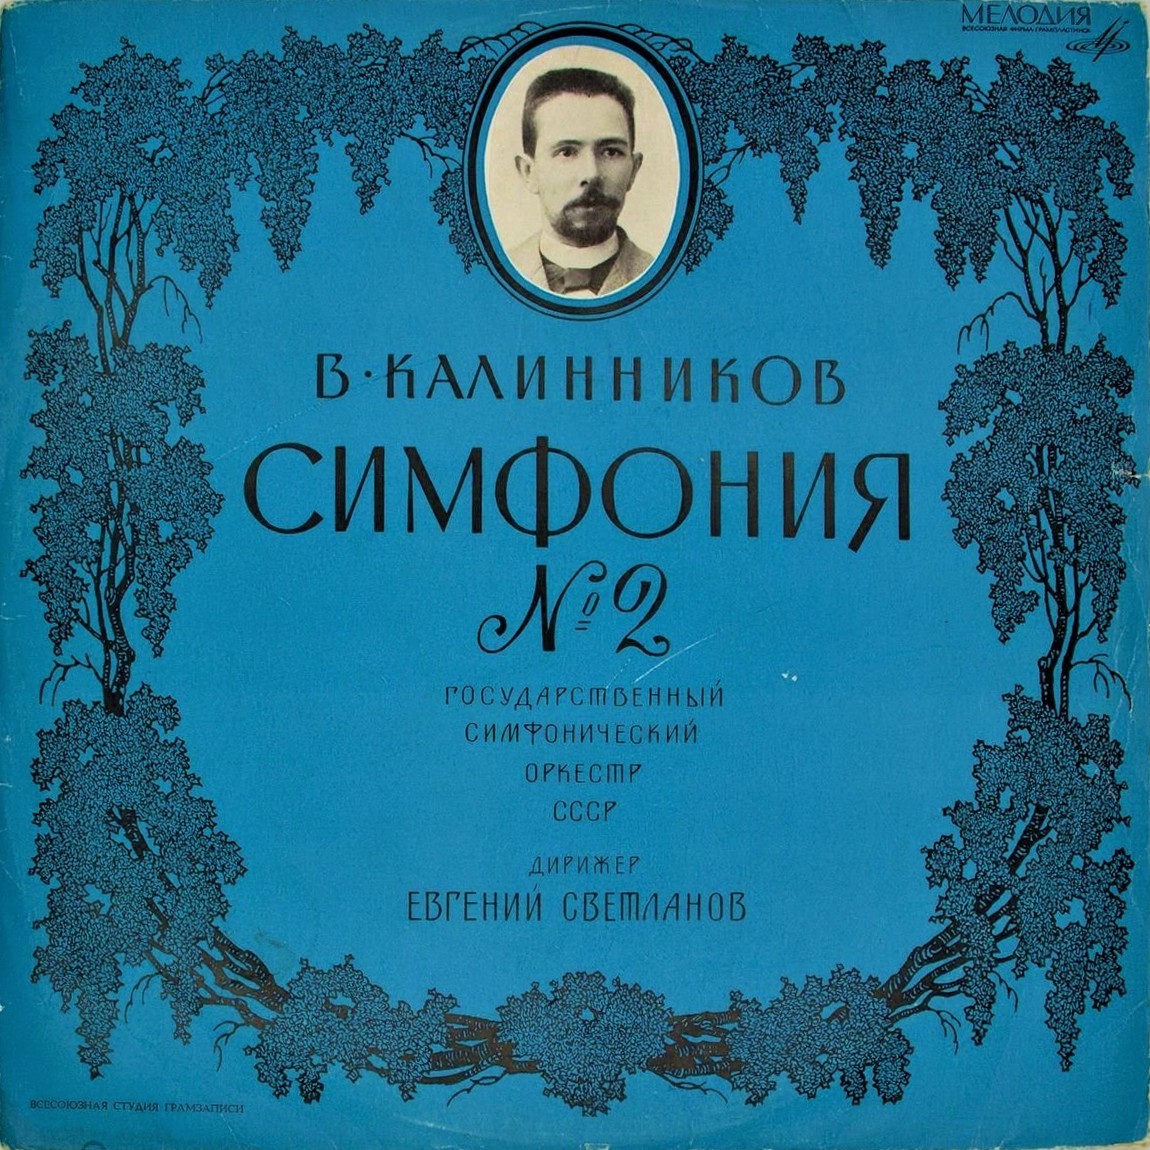 В. КАЛИННИКОВ (1866-1901): Симфония № 2 ля мажор (Е. Светланов)